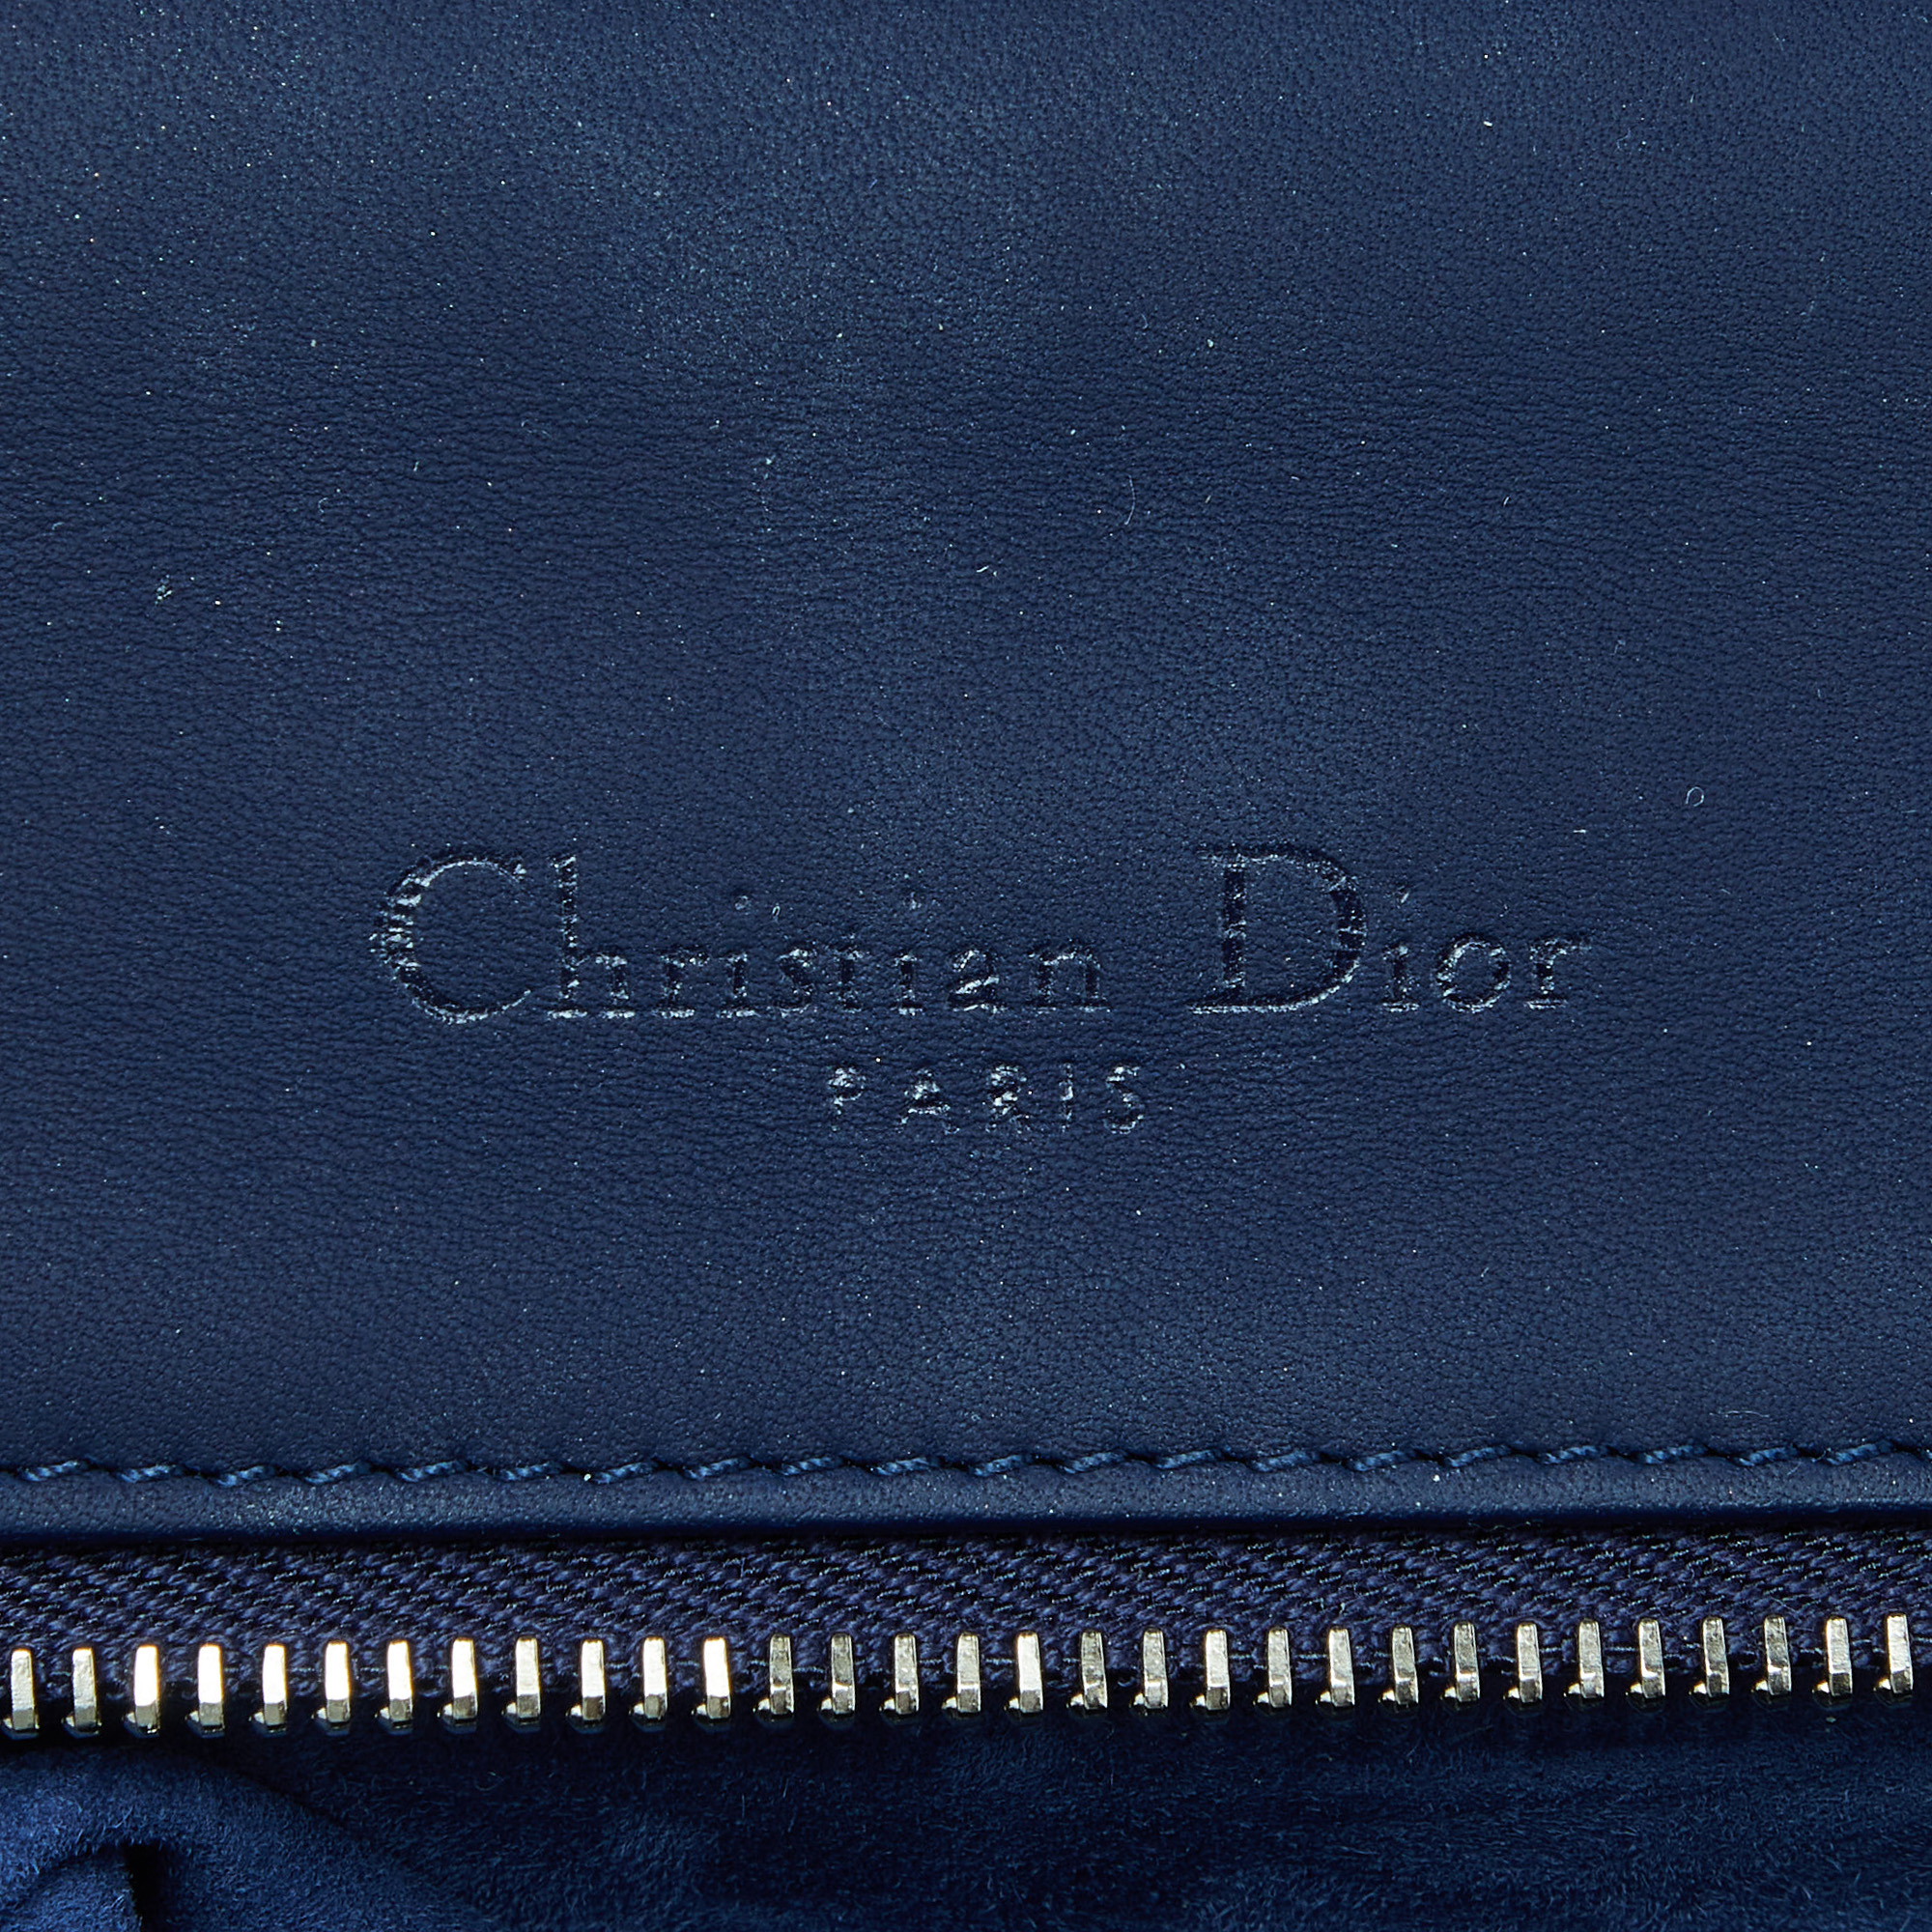 Dior Navy Blue Ultra Matte Leather Medium Diorama Flap Shoulder Bag